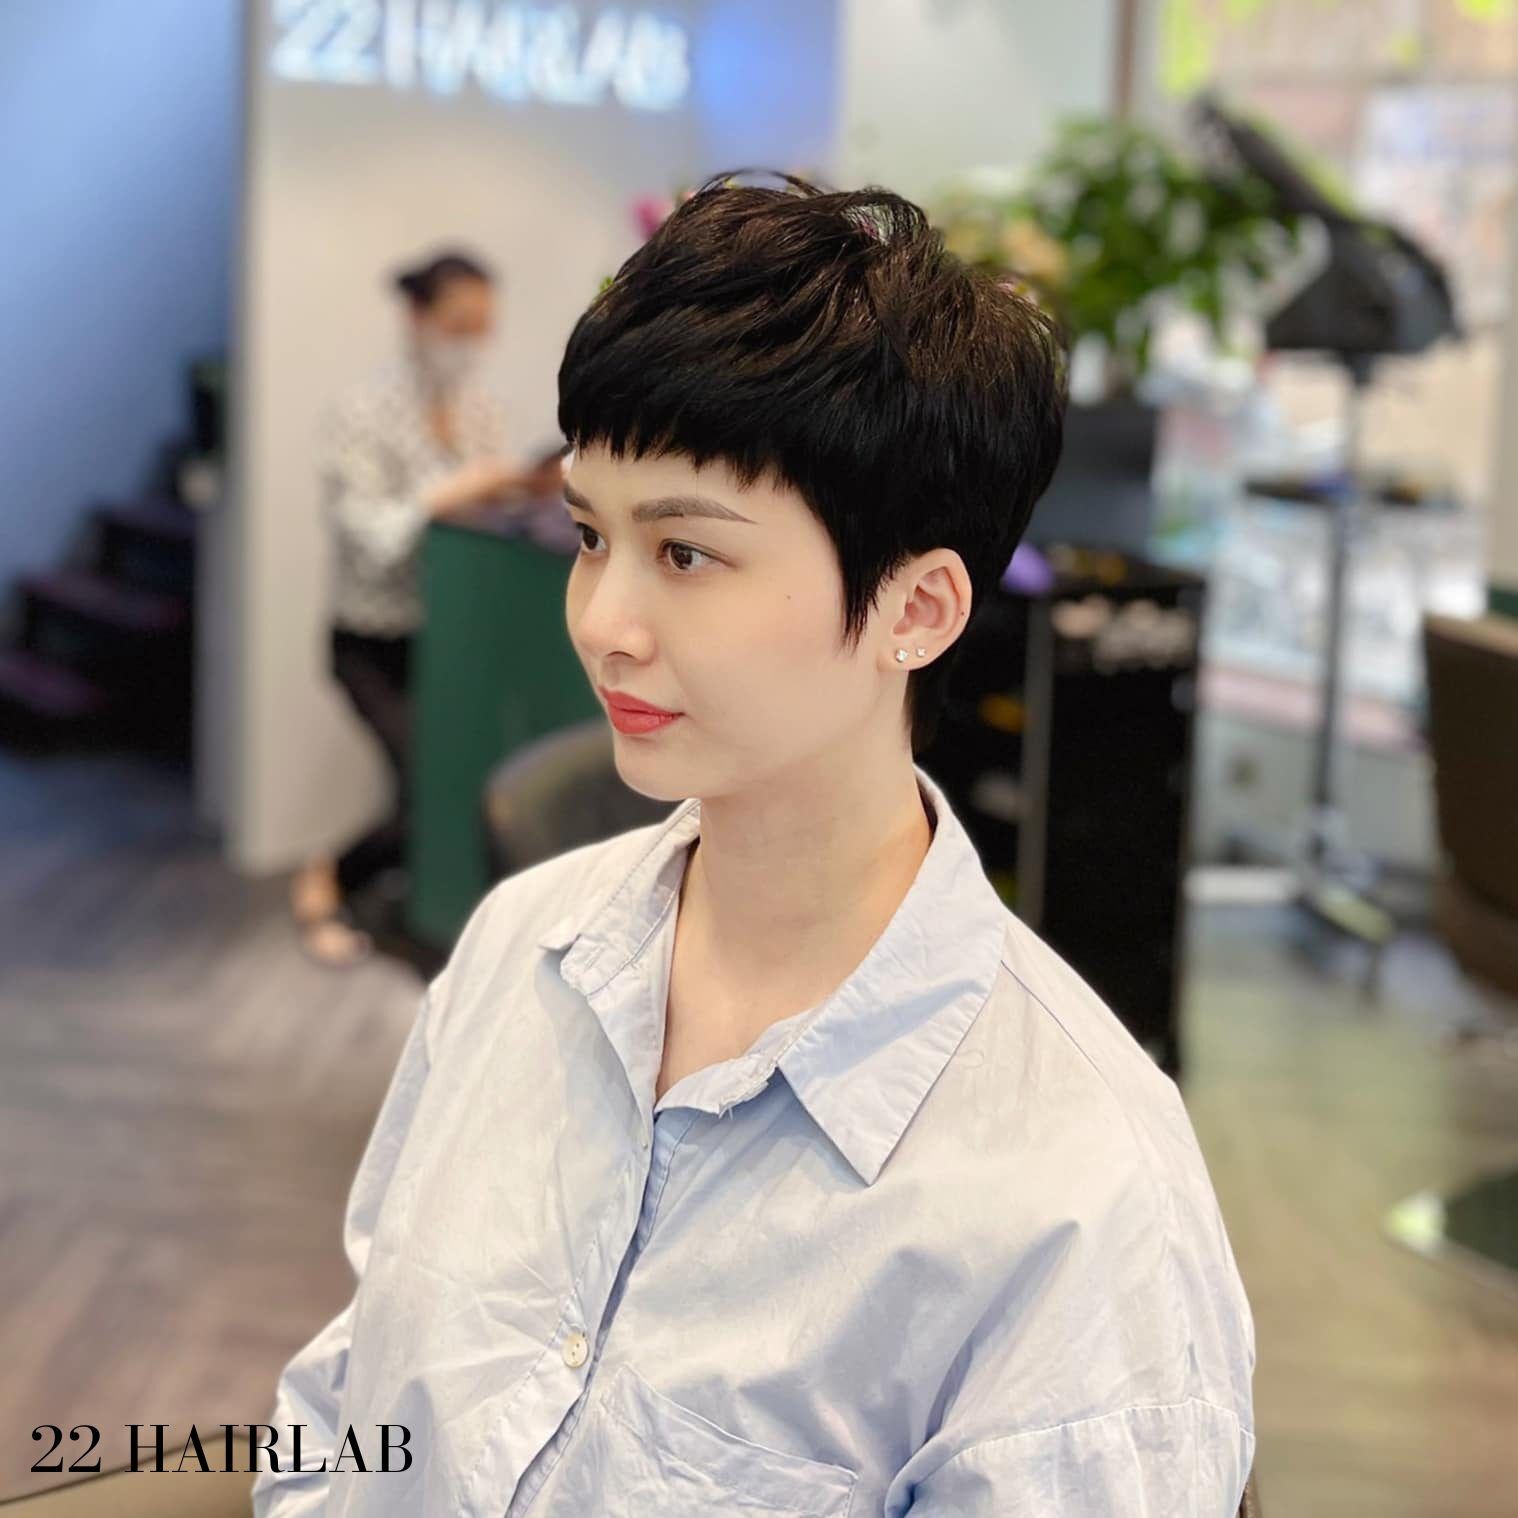 Thiết kế kiểu tóc theo phong cách Hàn Quốc đẳng cấp tại 22 Hairlab. Hãy để đội ngũ chuyên gia của 22 Hairlab tạo ra cho bạn một mái tóc đầy cá tính và nổi bật.